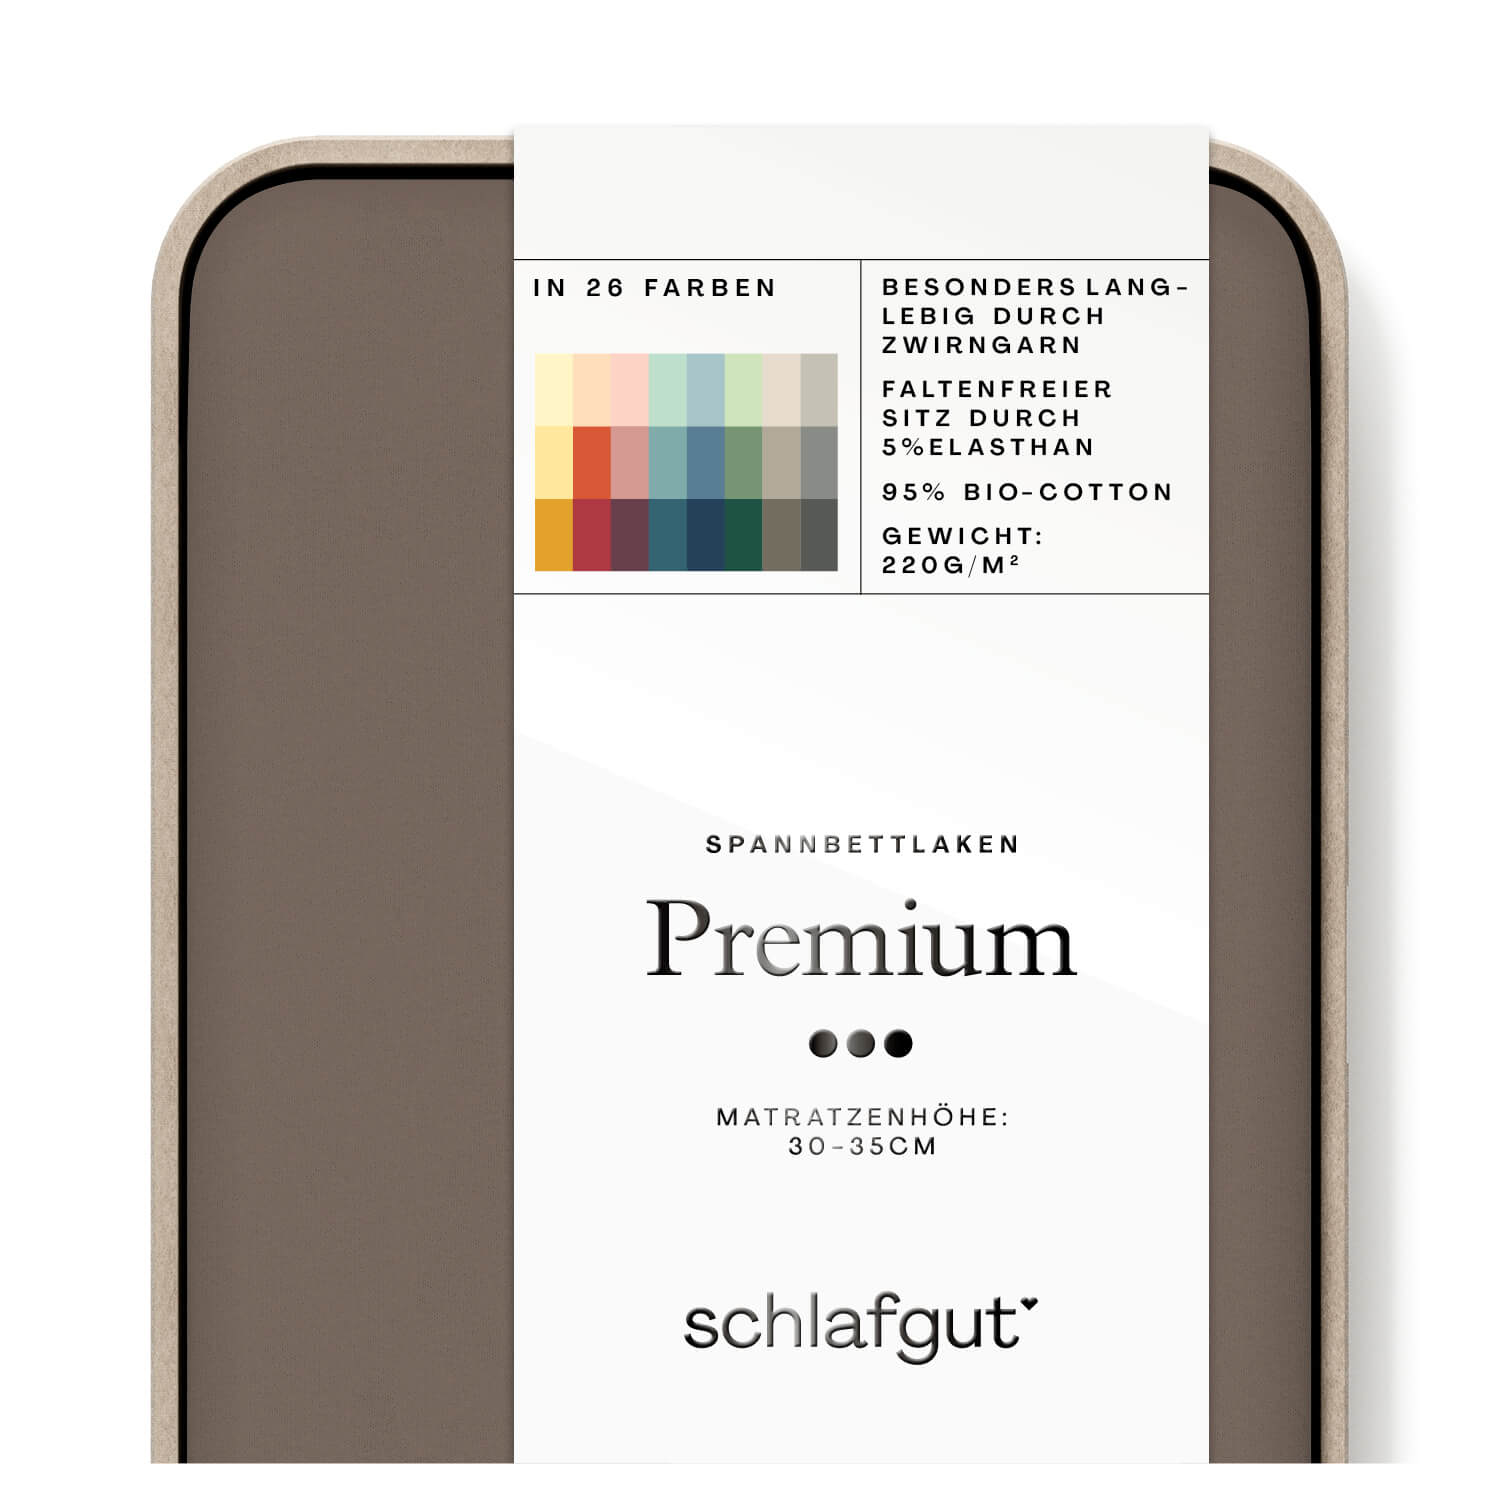 Das Produktbild vom Spannbettlaken der Reihe Premium in Farbe sand deep von Schlafgut